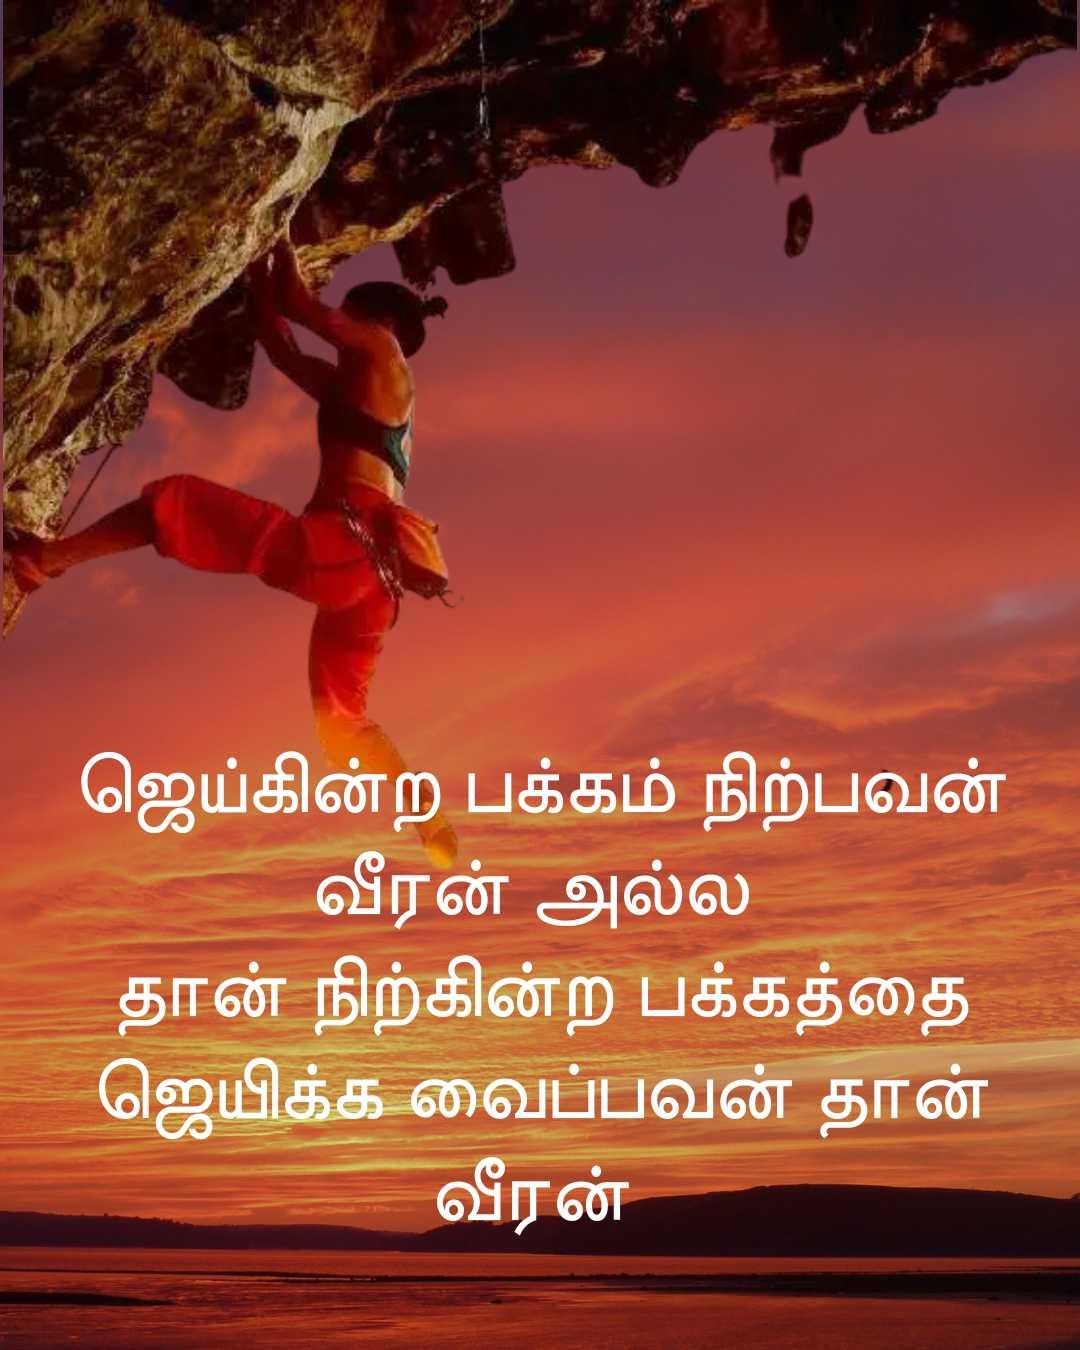 வாழ்க்கையில் எதையும் சாதிக்க ஊக்கமளிக்கும் கவிதைகள் | Motivational Quotes in Tamil